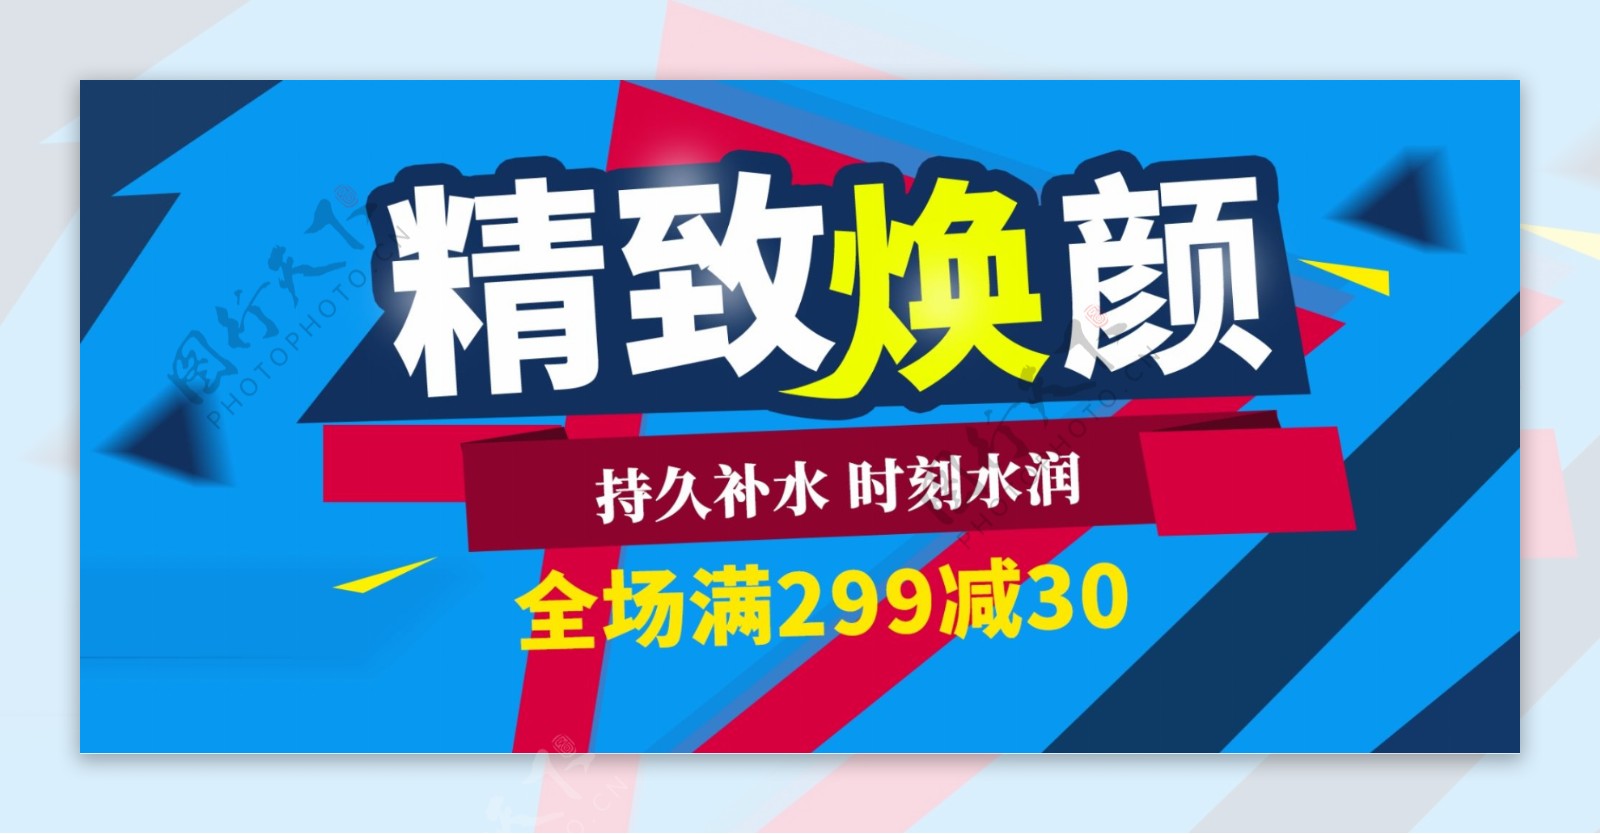 蓝色大气化妆品促销banner